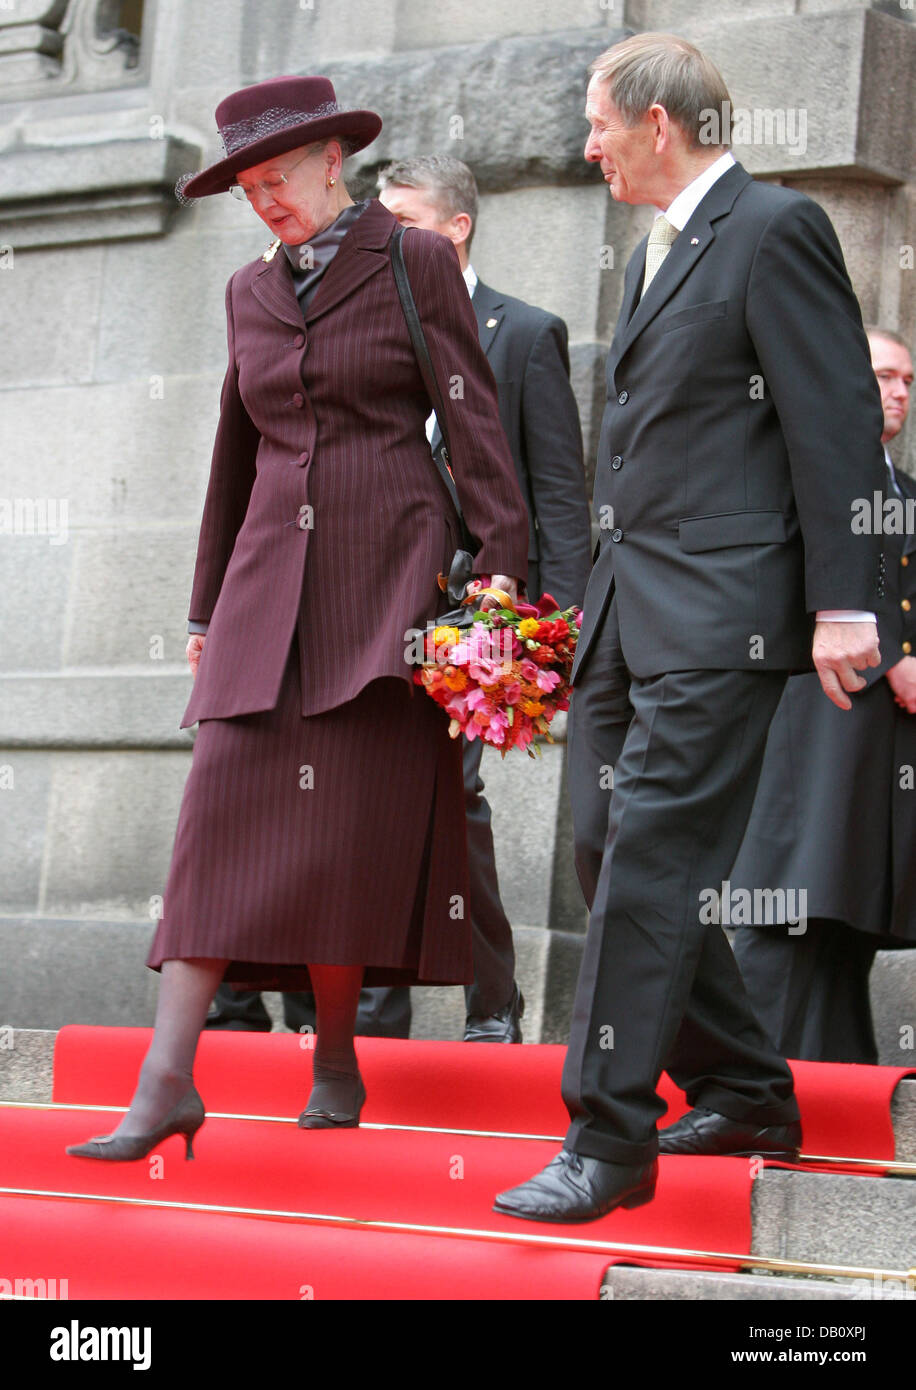 La regina Margrethe di Danimarca passeggiate lungo i passaggi alla tradizionale apertura del parlamento danese stagione al palazzo di Christiansborg a Copenhague, Danimarca, 02 ottobre 2007. Foto: Albert Philip van der Werf (PAESI BASSI) Foto Stock